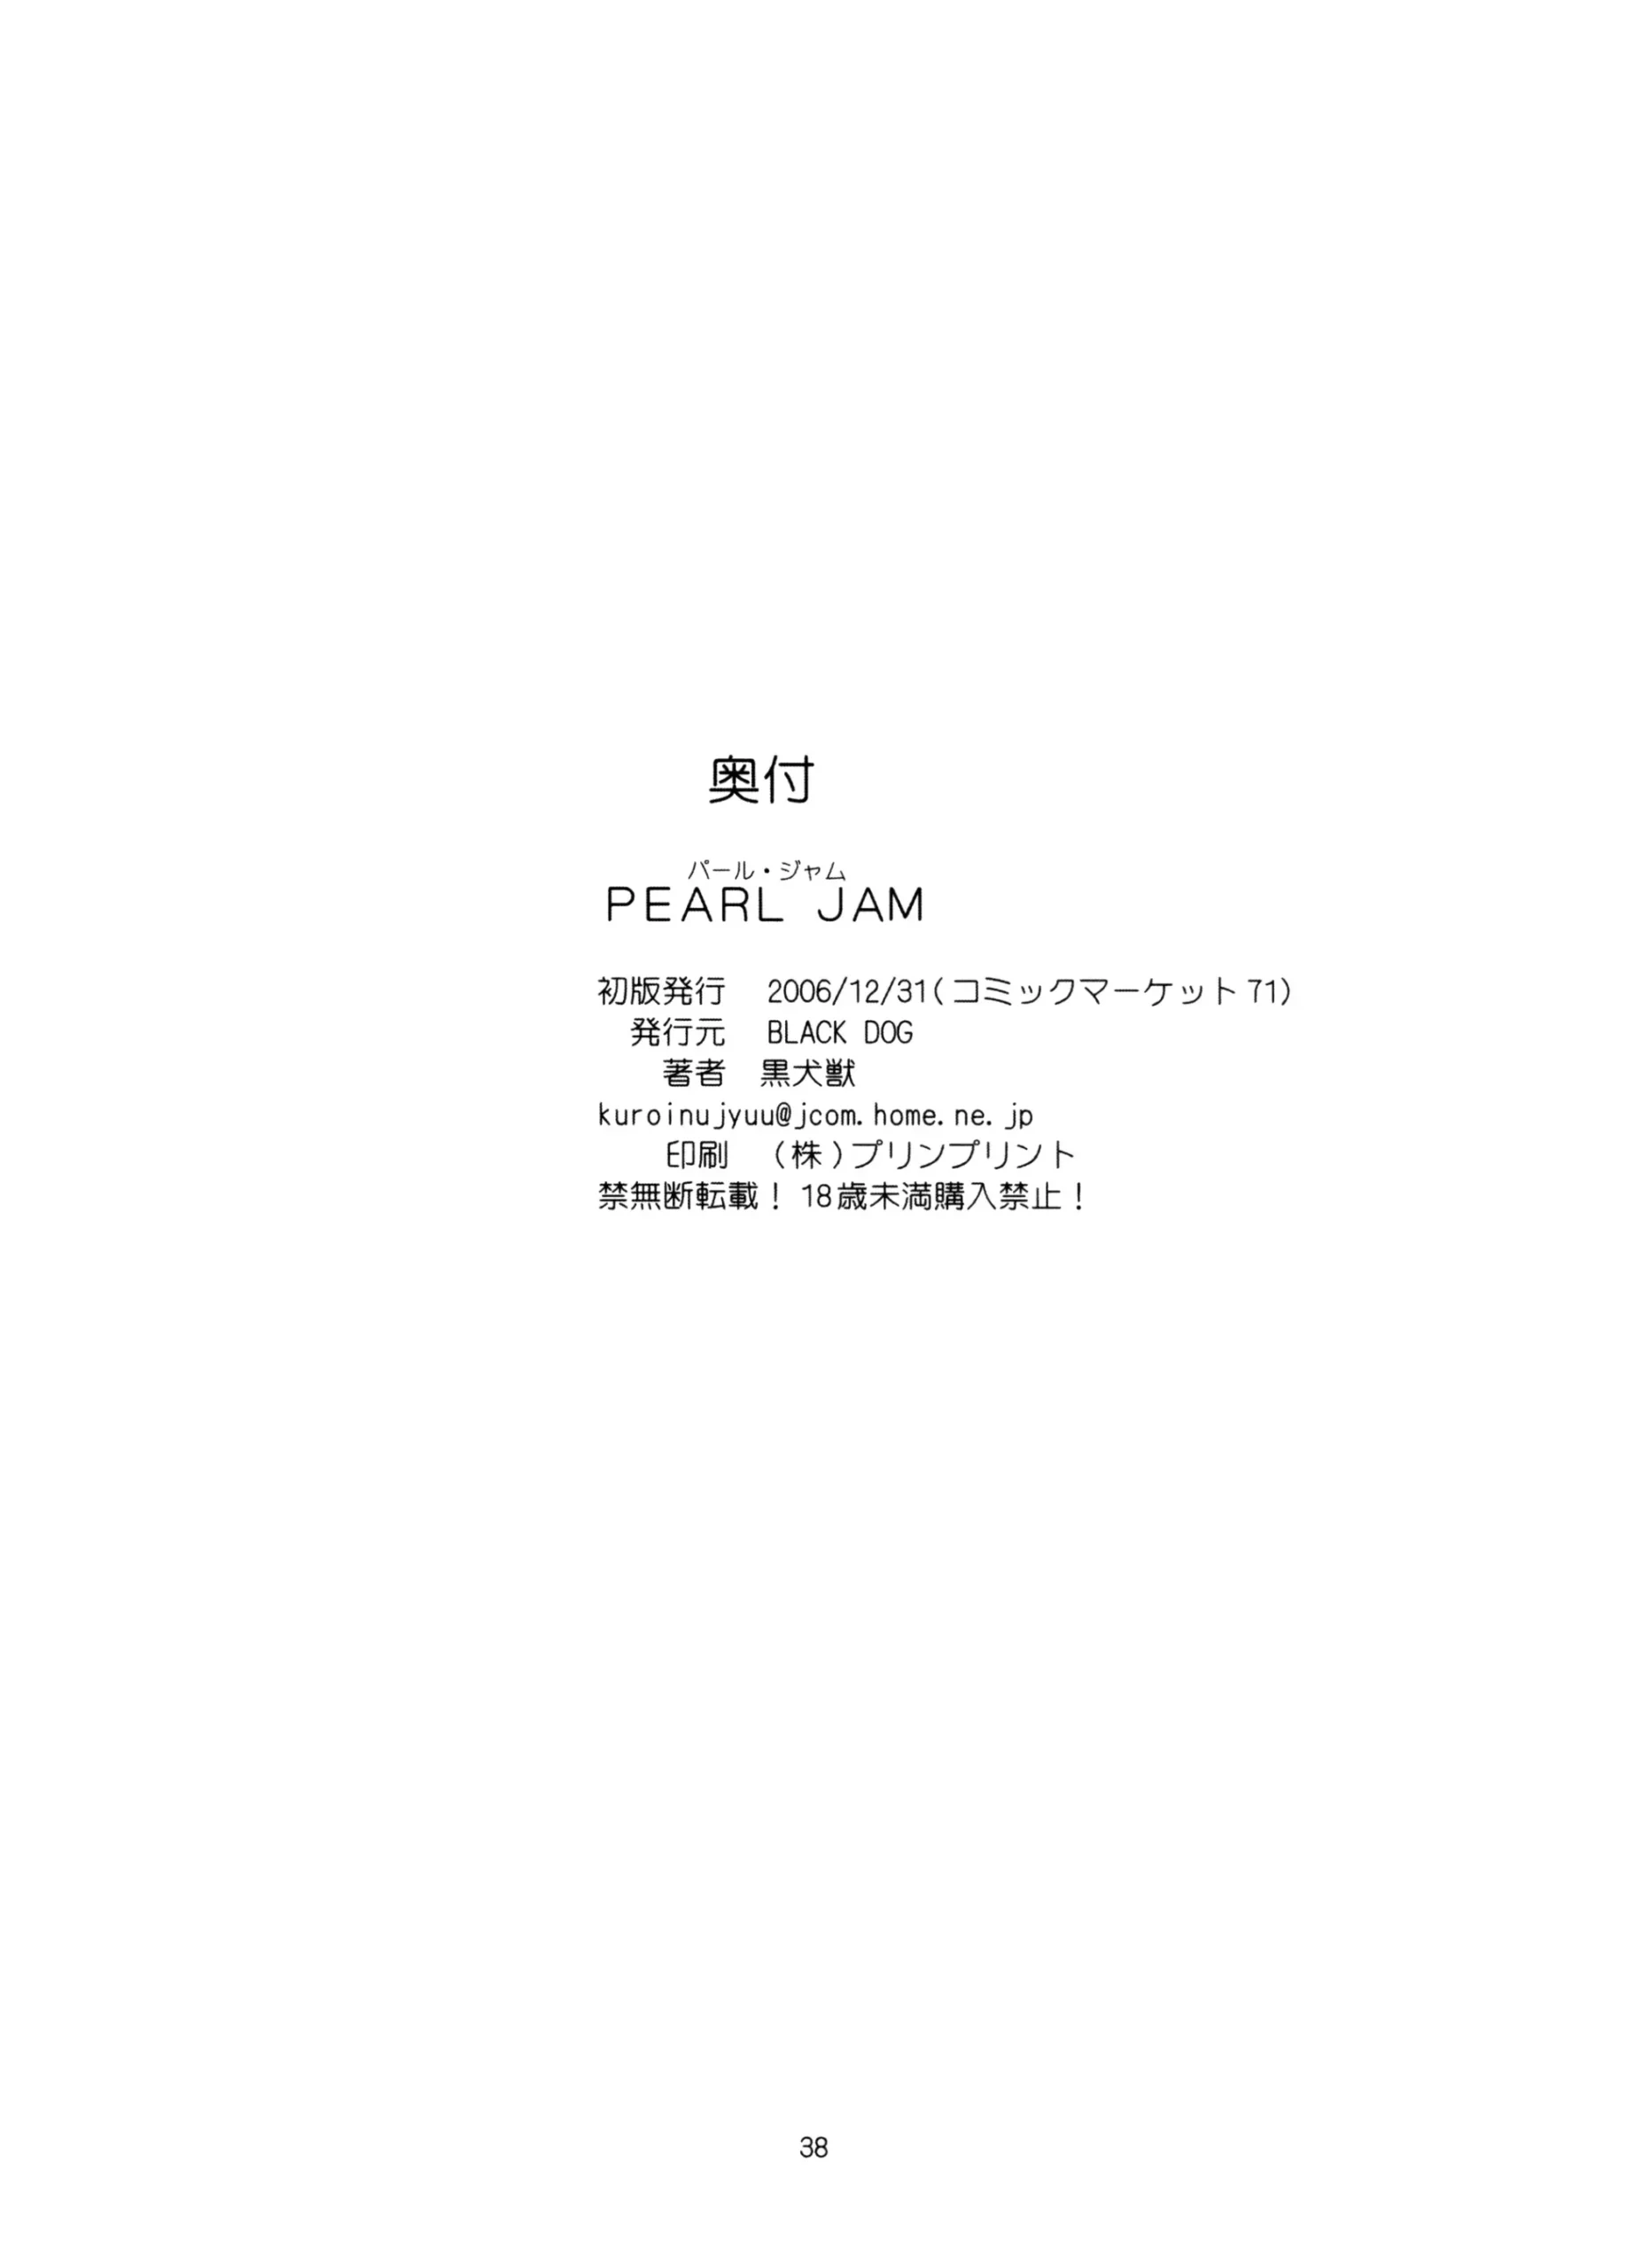 Pearl Jam - Foto 37